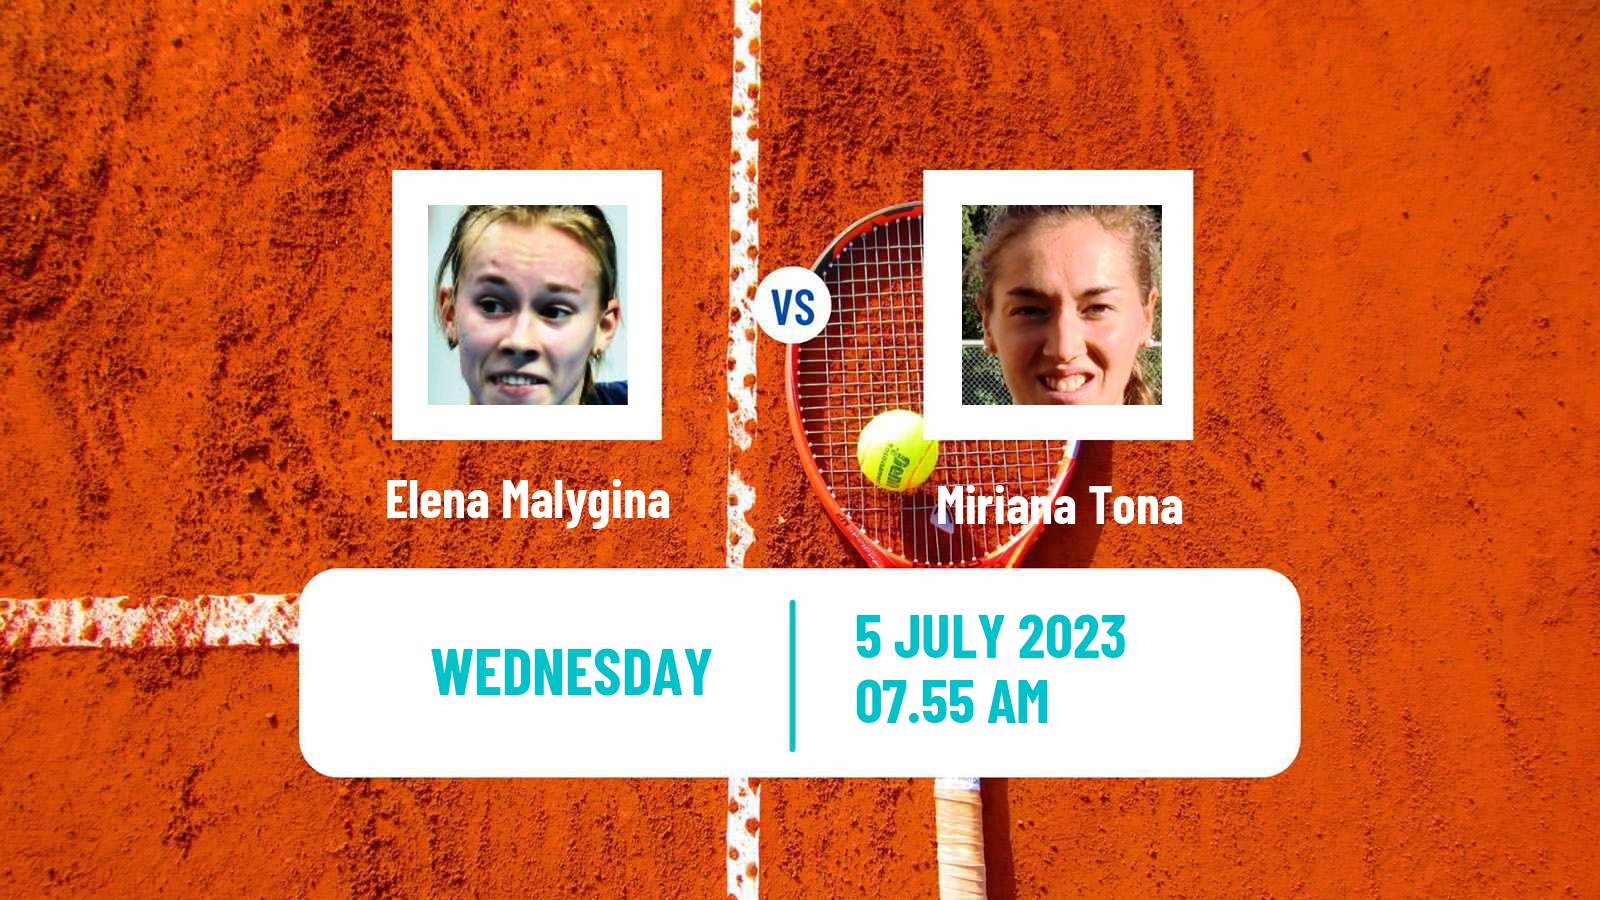 Tennis ITF W60 Liepaja Women Elena Malygina - Miriana Tona